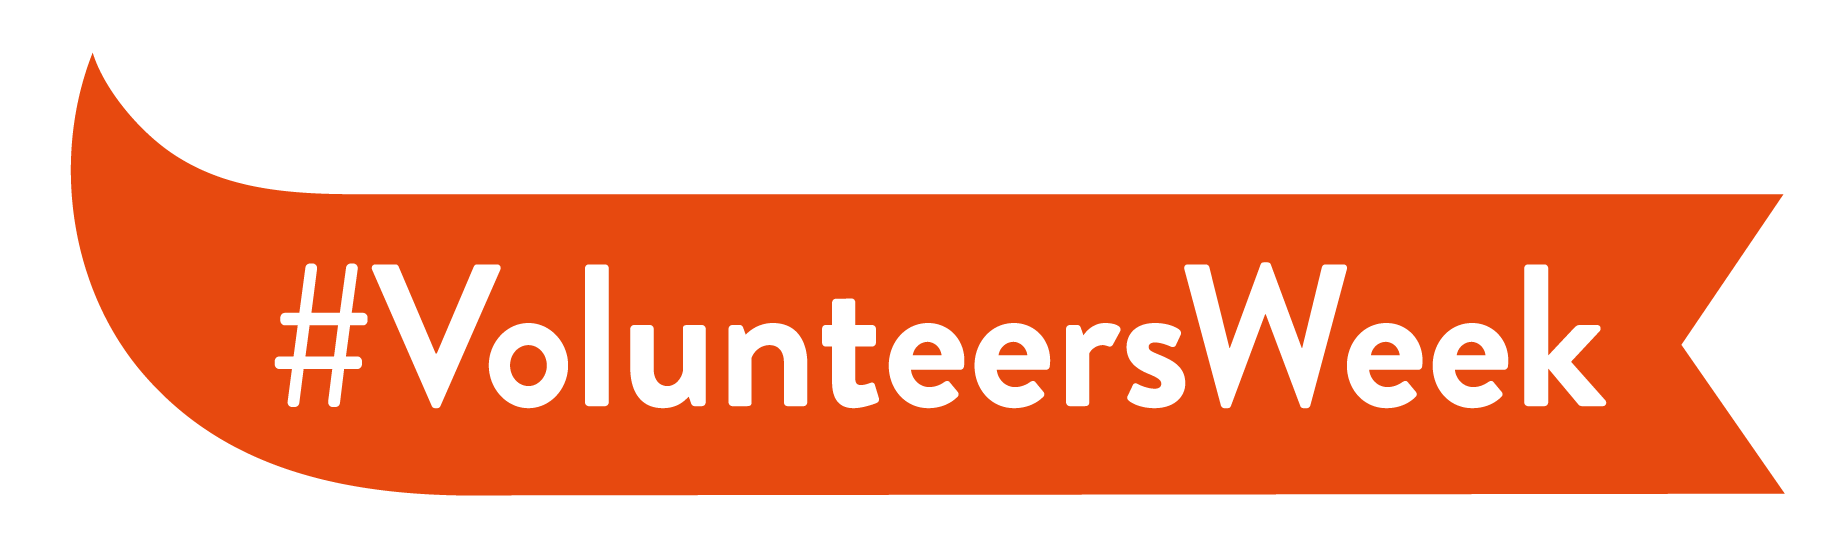 Volunteers Week Hashtag Graphic Orange